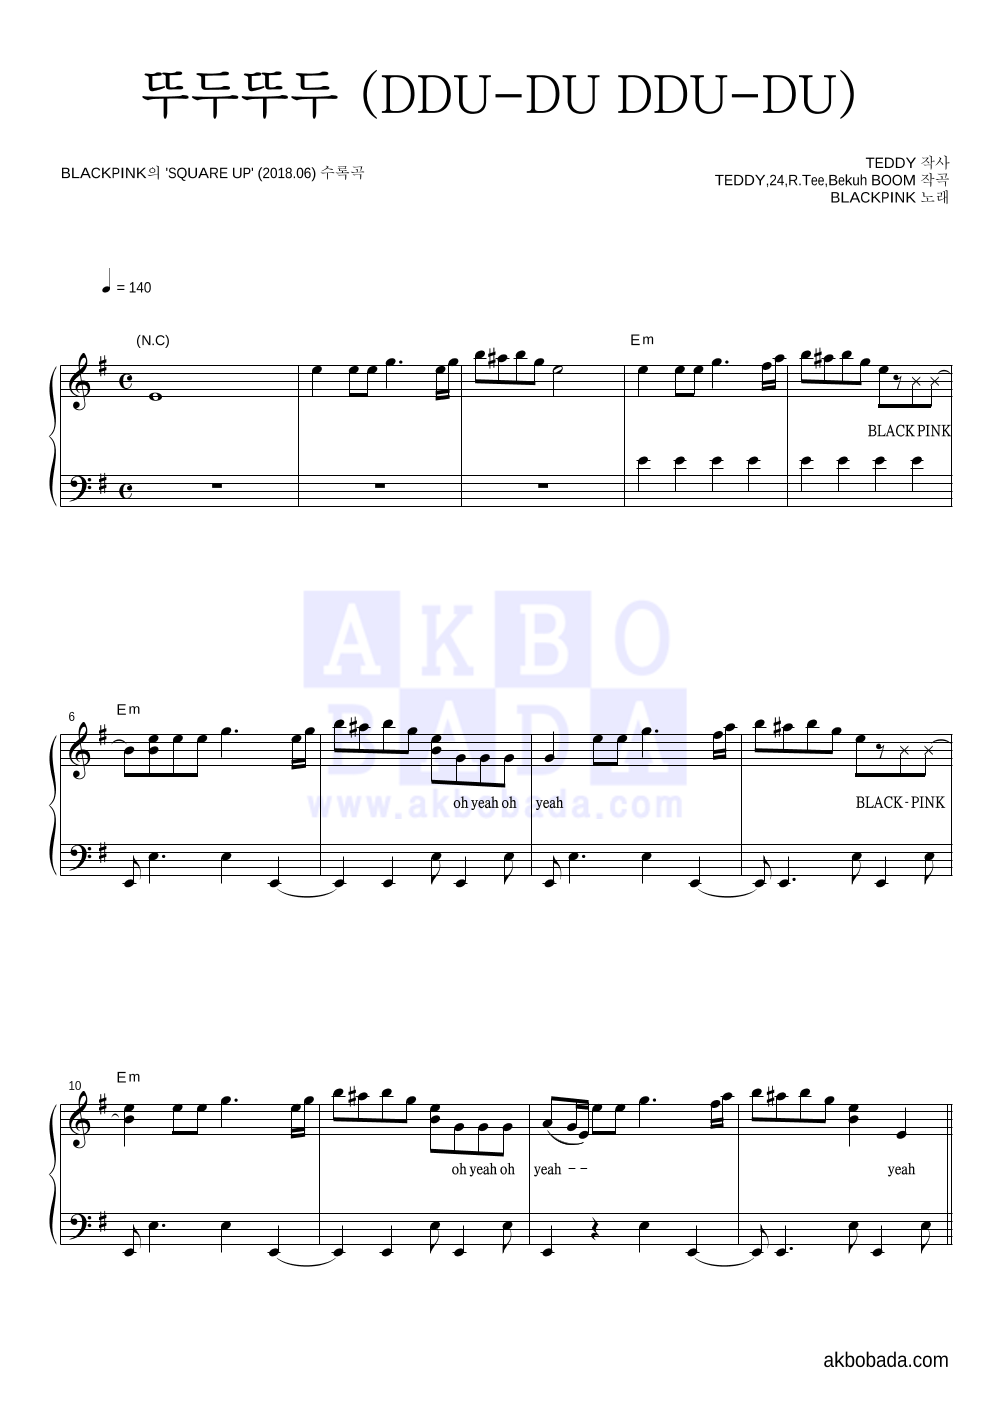 블랙핑크 - 뚜두뚜두 (DDU-DU DDU-DU) 피아노 2단 악보 